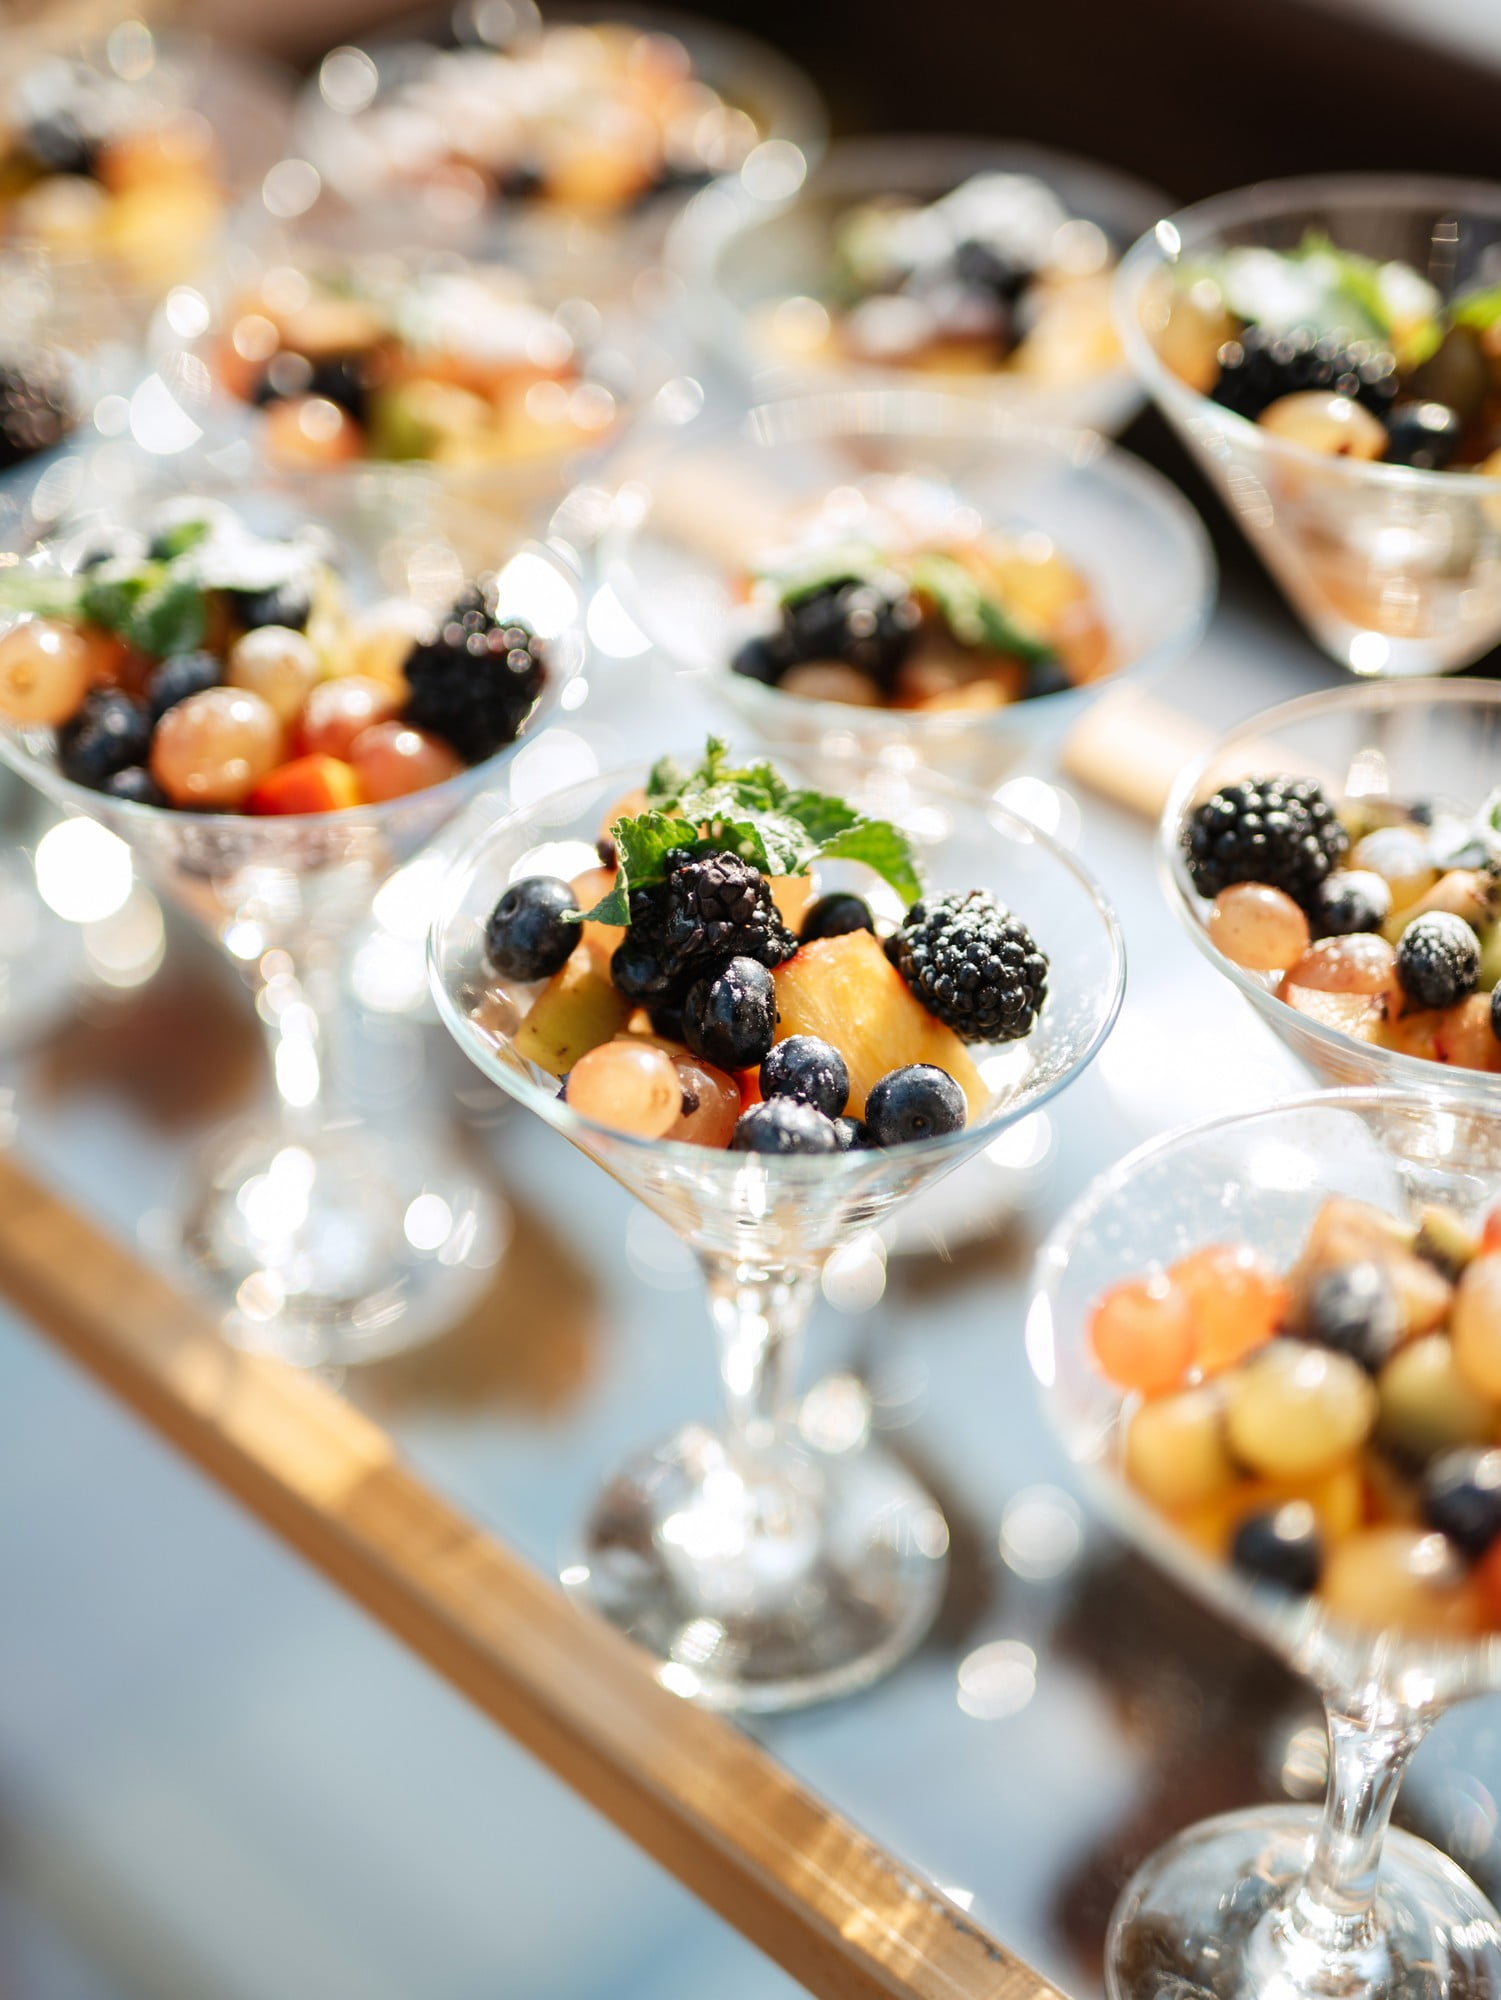 Gli antipasti o la frutta possono essere serviti nei bicchieri.